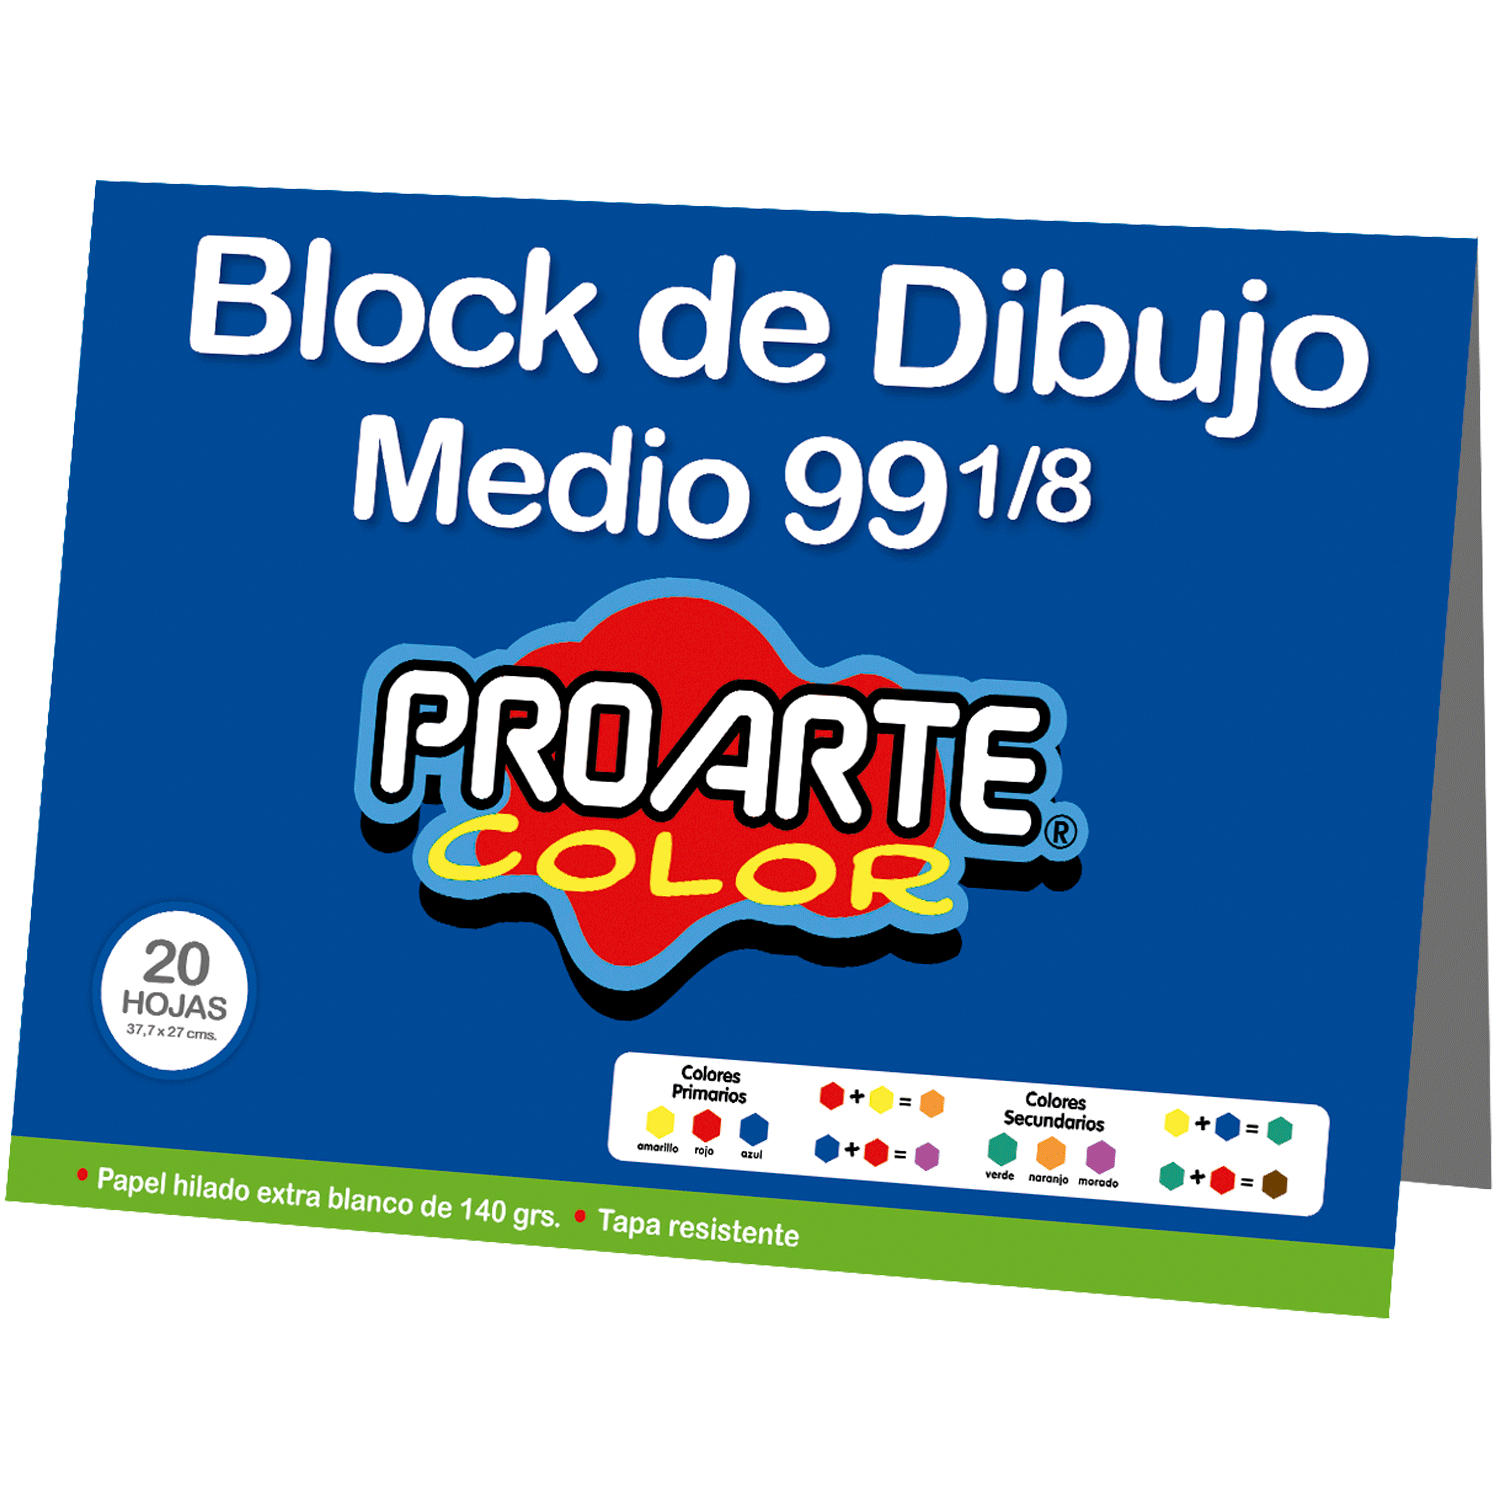 Block de Dibujo N°99 1/8 Proarte Color 20 Hojas